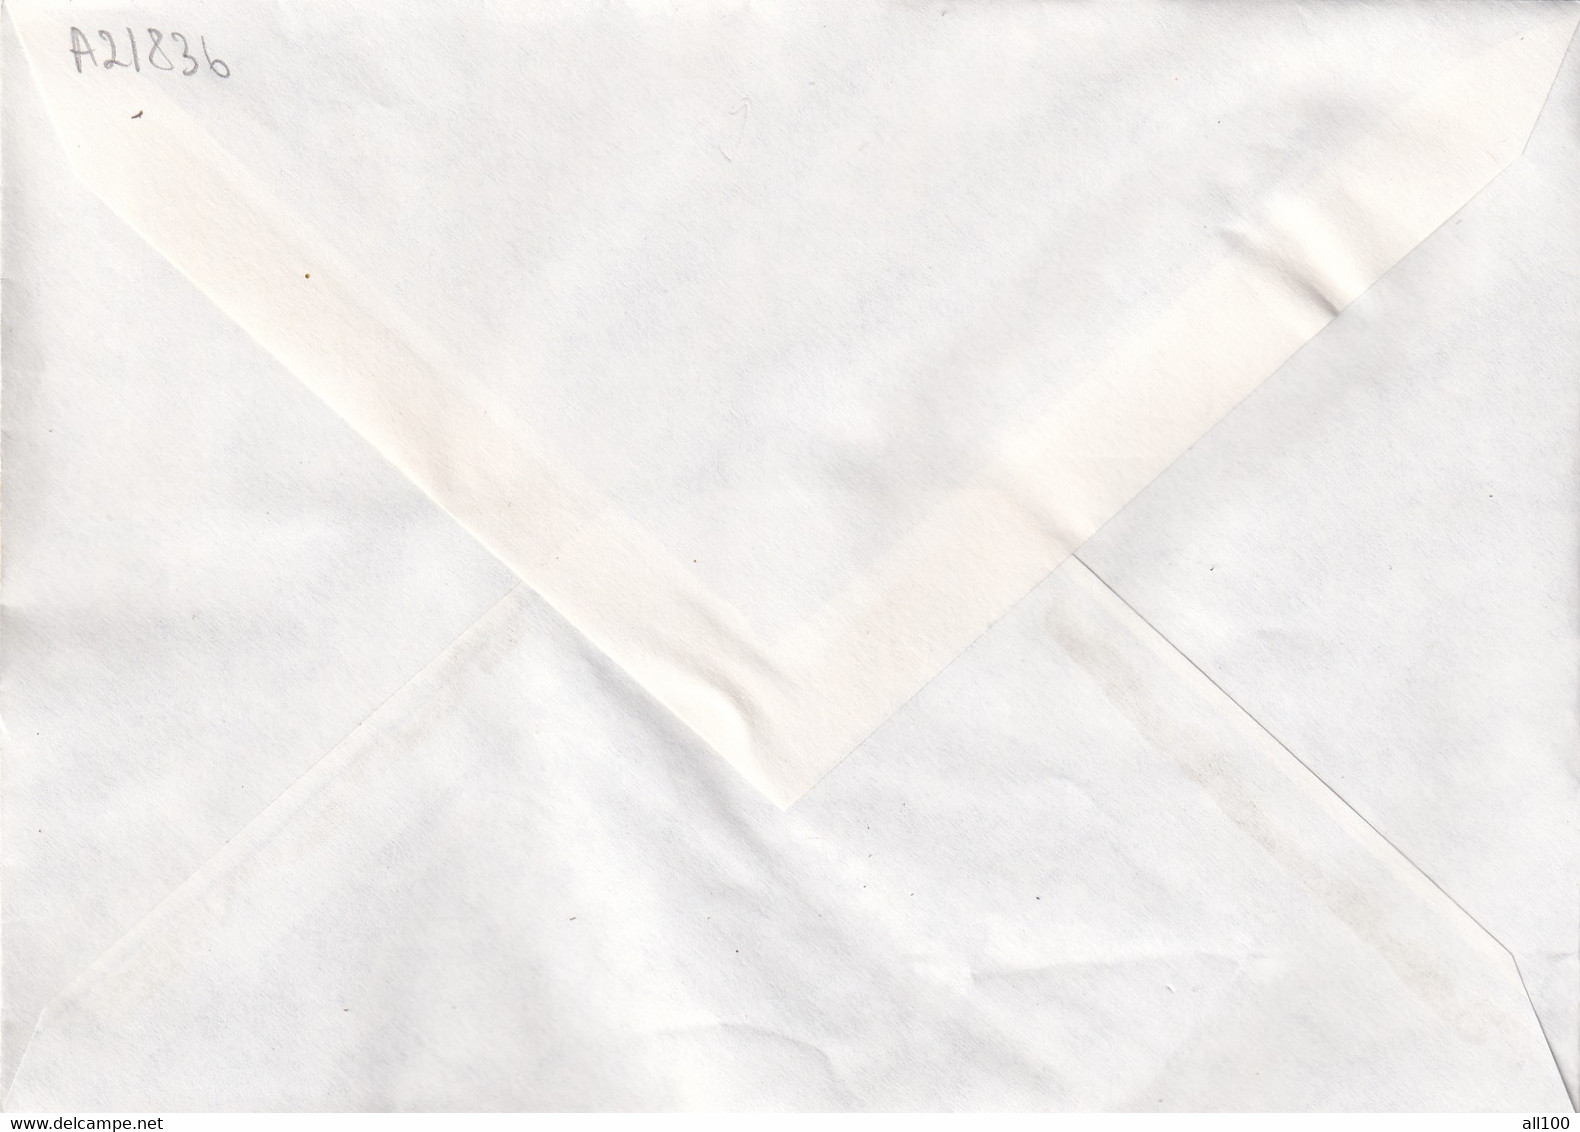 A21836 - Temple De Borobudur Premier Jour Paris Cover Envelope Unused 1979 France Stamp Buddhism - Buddhismus